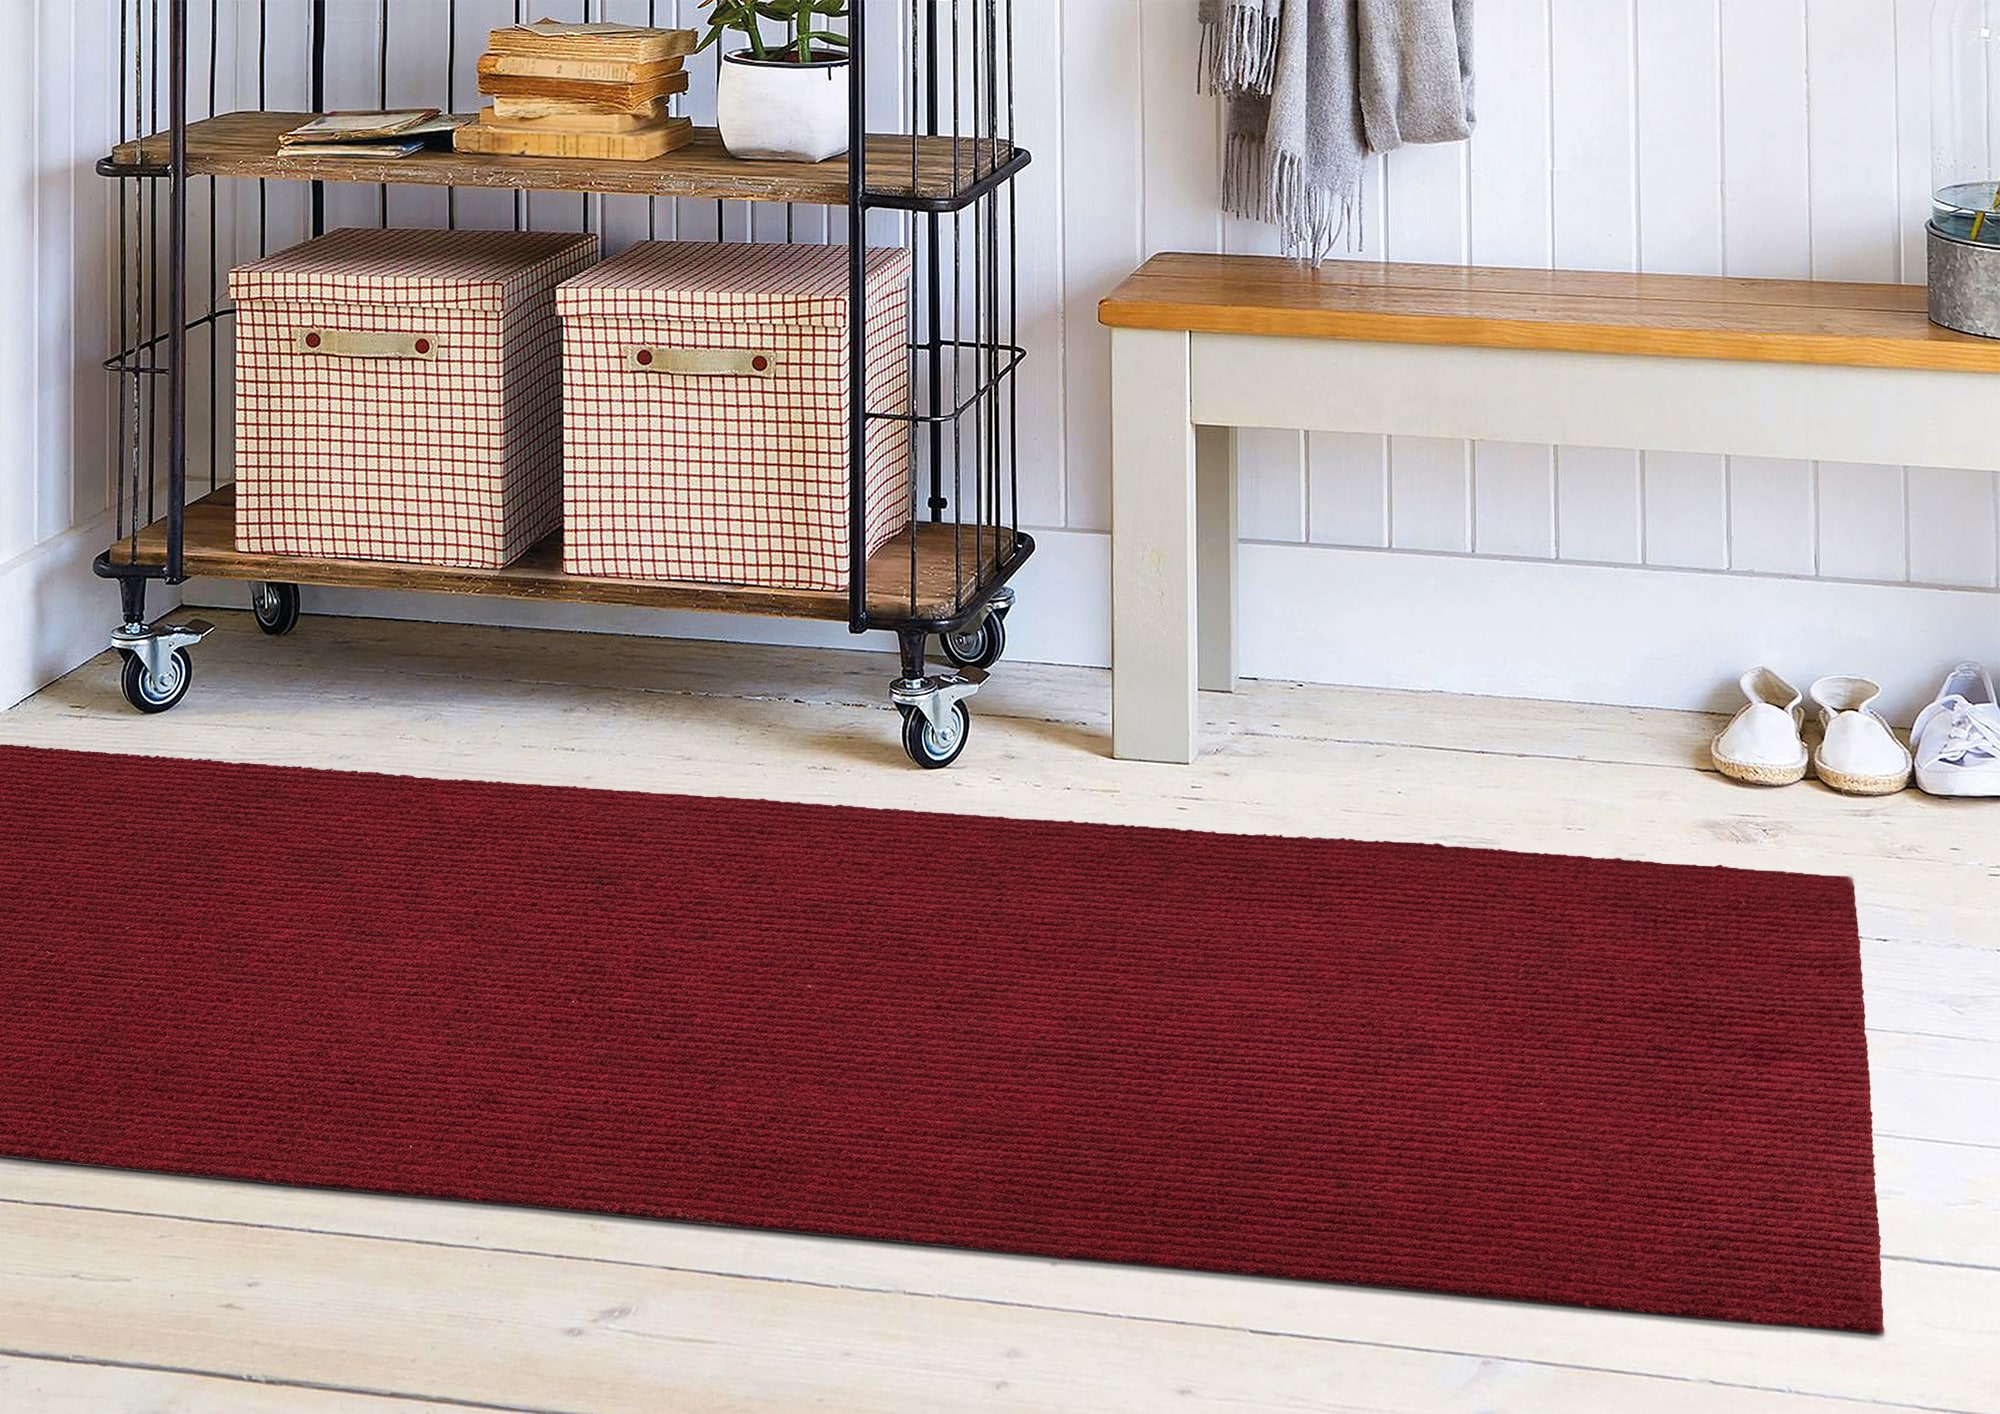 Ottomanson Easy Clean, Waterproof Non-Slip 2x3 Indoor/Outdoor Rubber Doormat, 20 in. x 39 in., Black